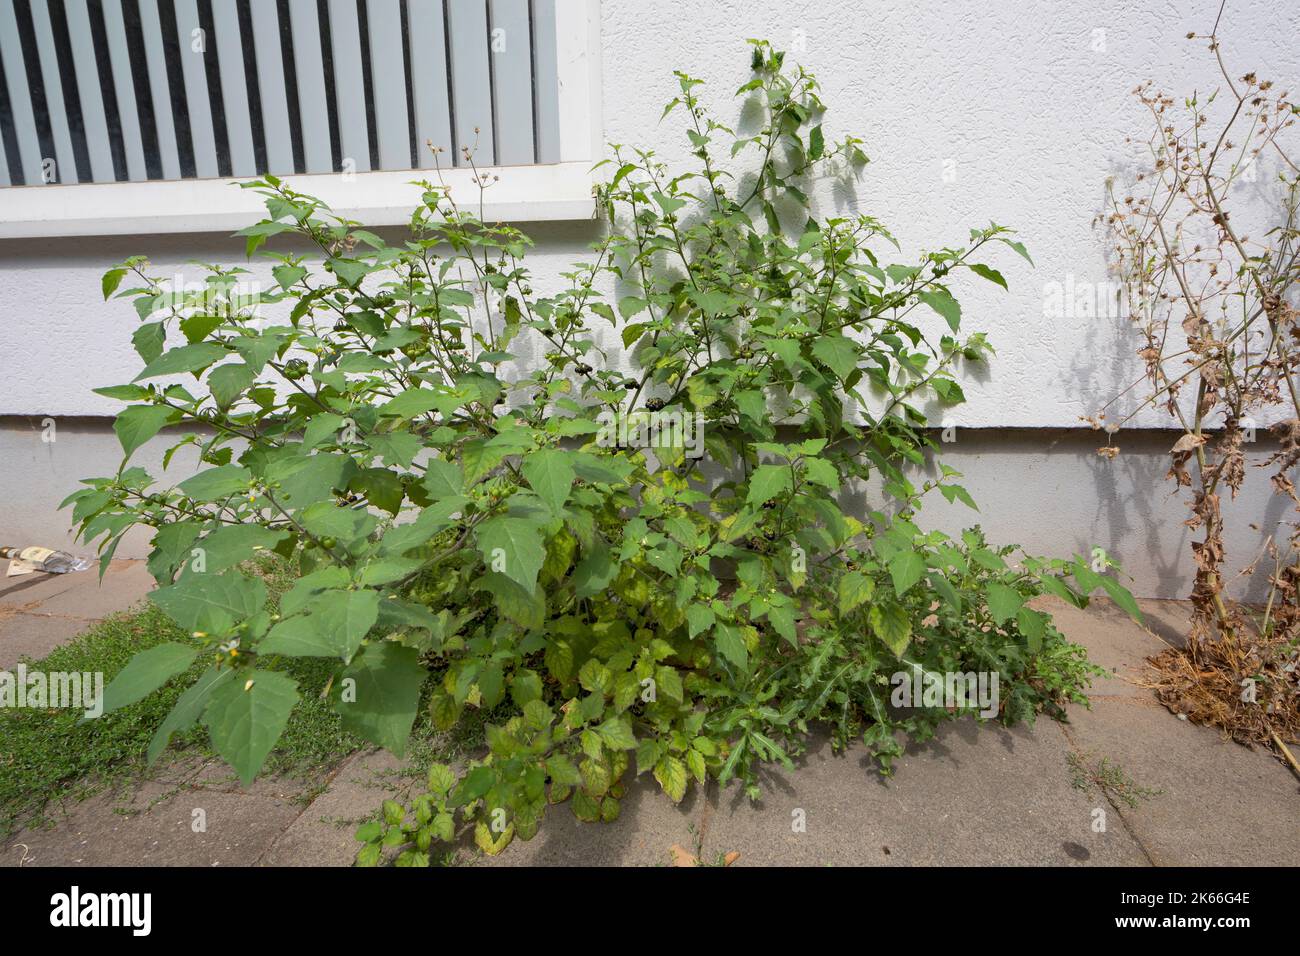 NightShade commun, nightShade noir (Solanum nigrum), en croissance dans les trous de pavage, Allemagne Banque D'Images